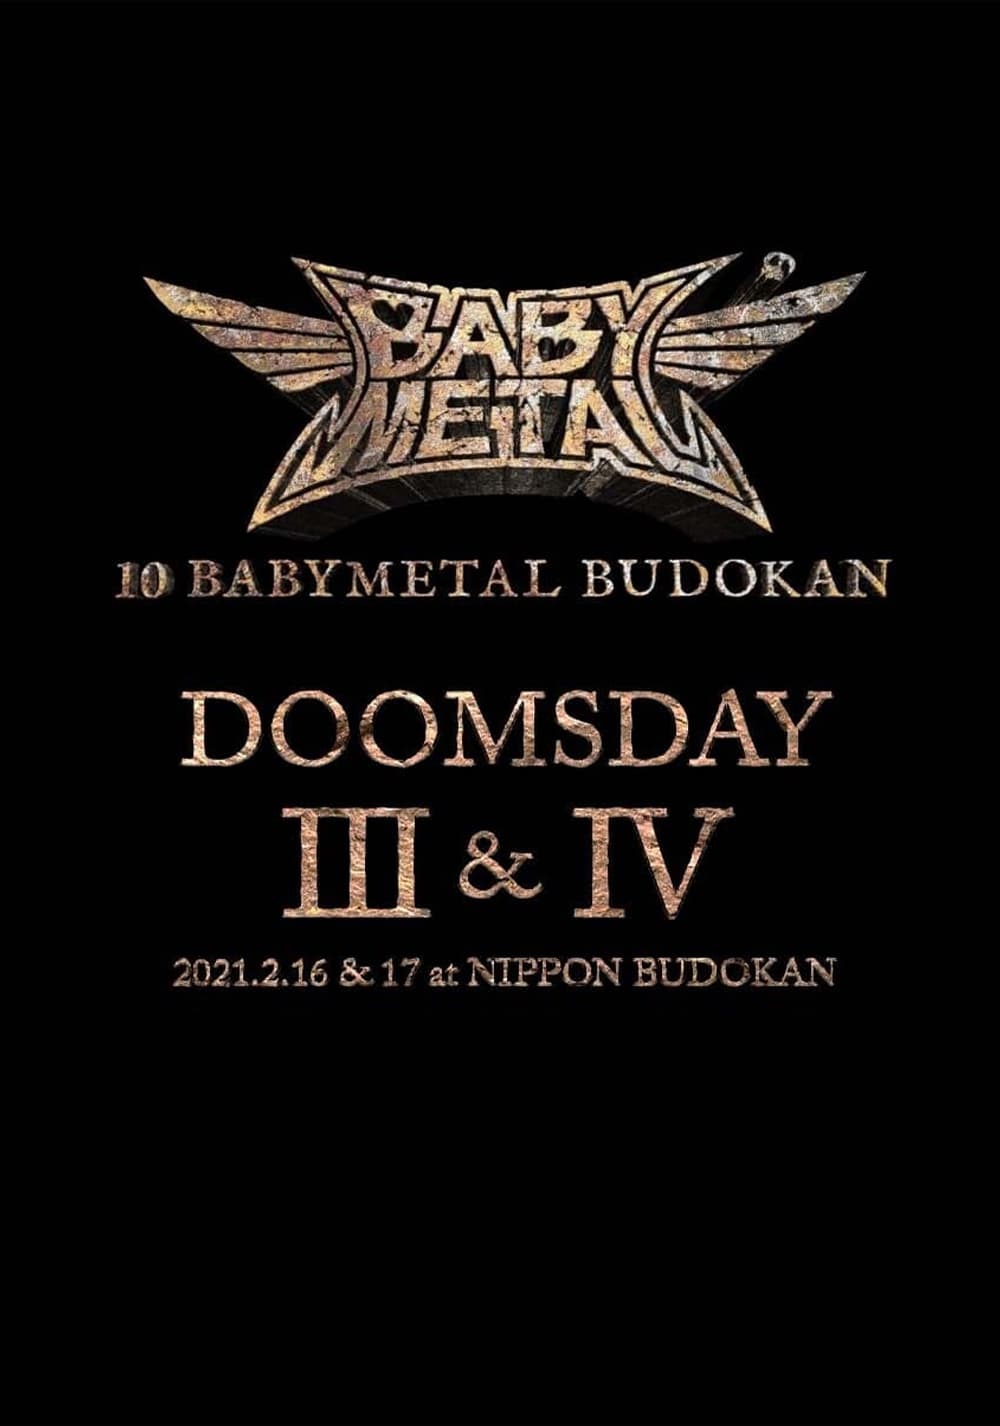 10 BABYMETAL BUDOKAN - DOOMSDAY III & IV